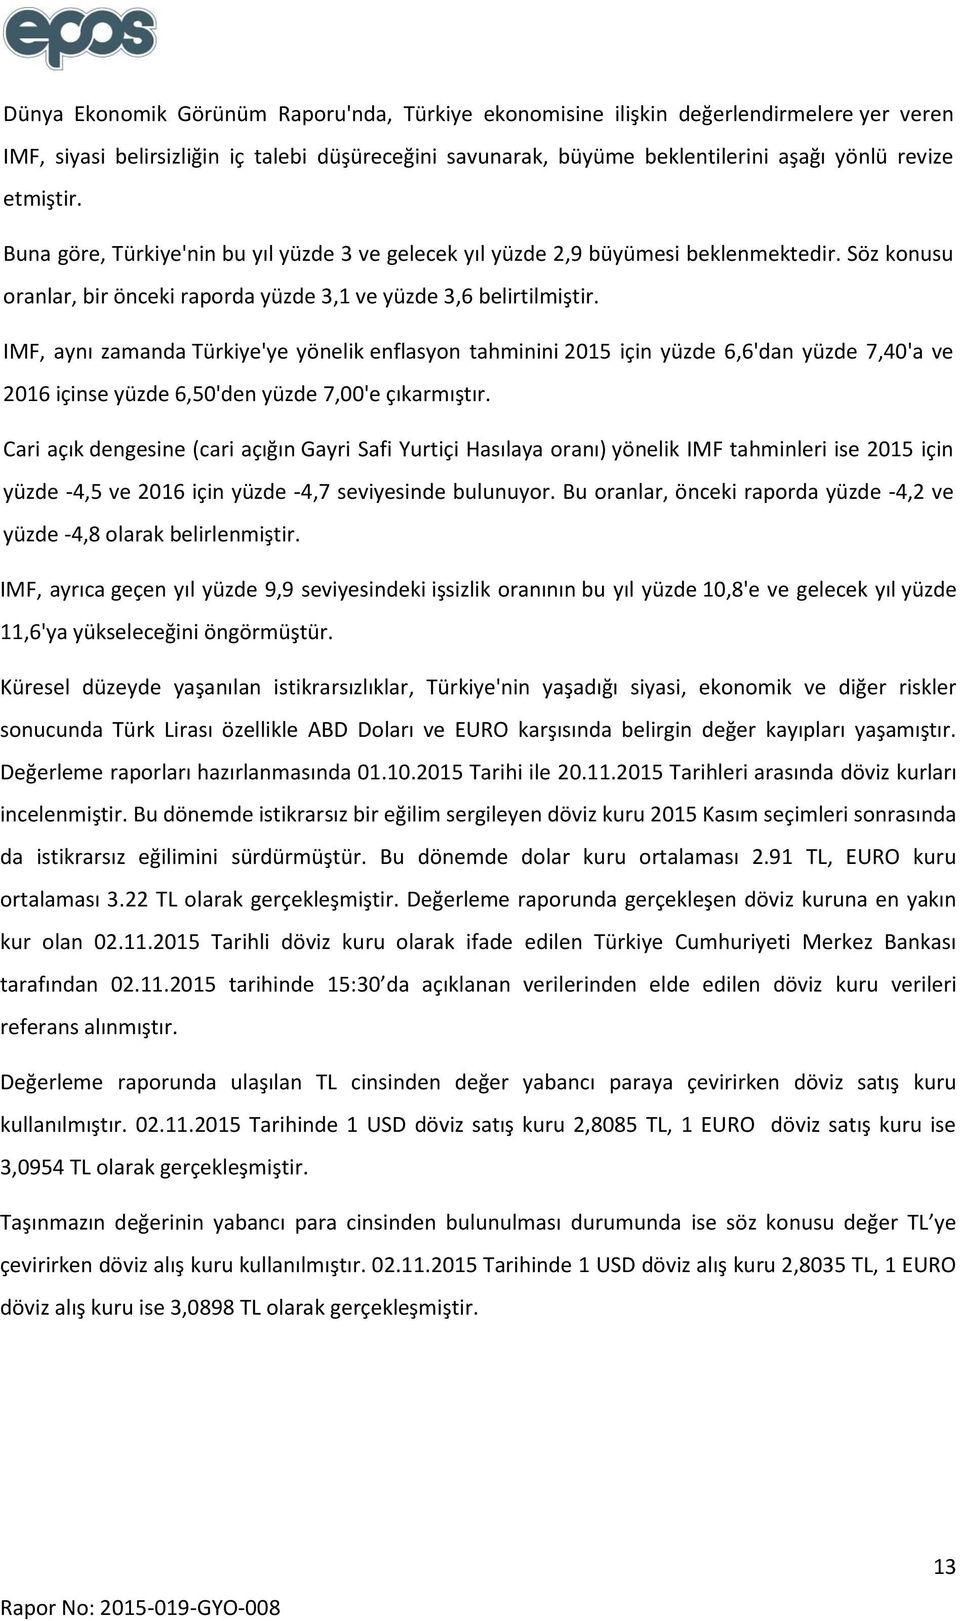 IMF, aynı zamanda Türkiye'ye yönelik enflasyon tahminini 2015 için yüzde 6,6'dan yüzde 7,40'a ve 2016 içinse yüzde 6,50'den yüzde 7,00'e çıkarmıştır.